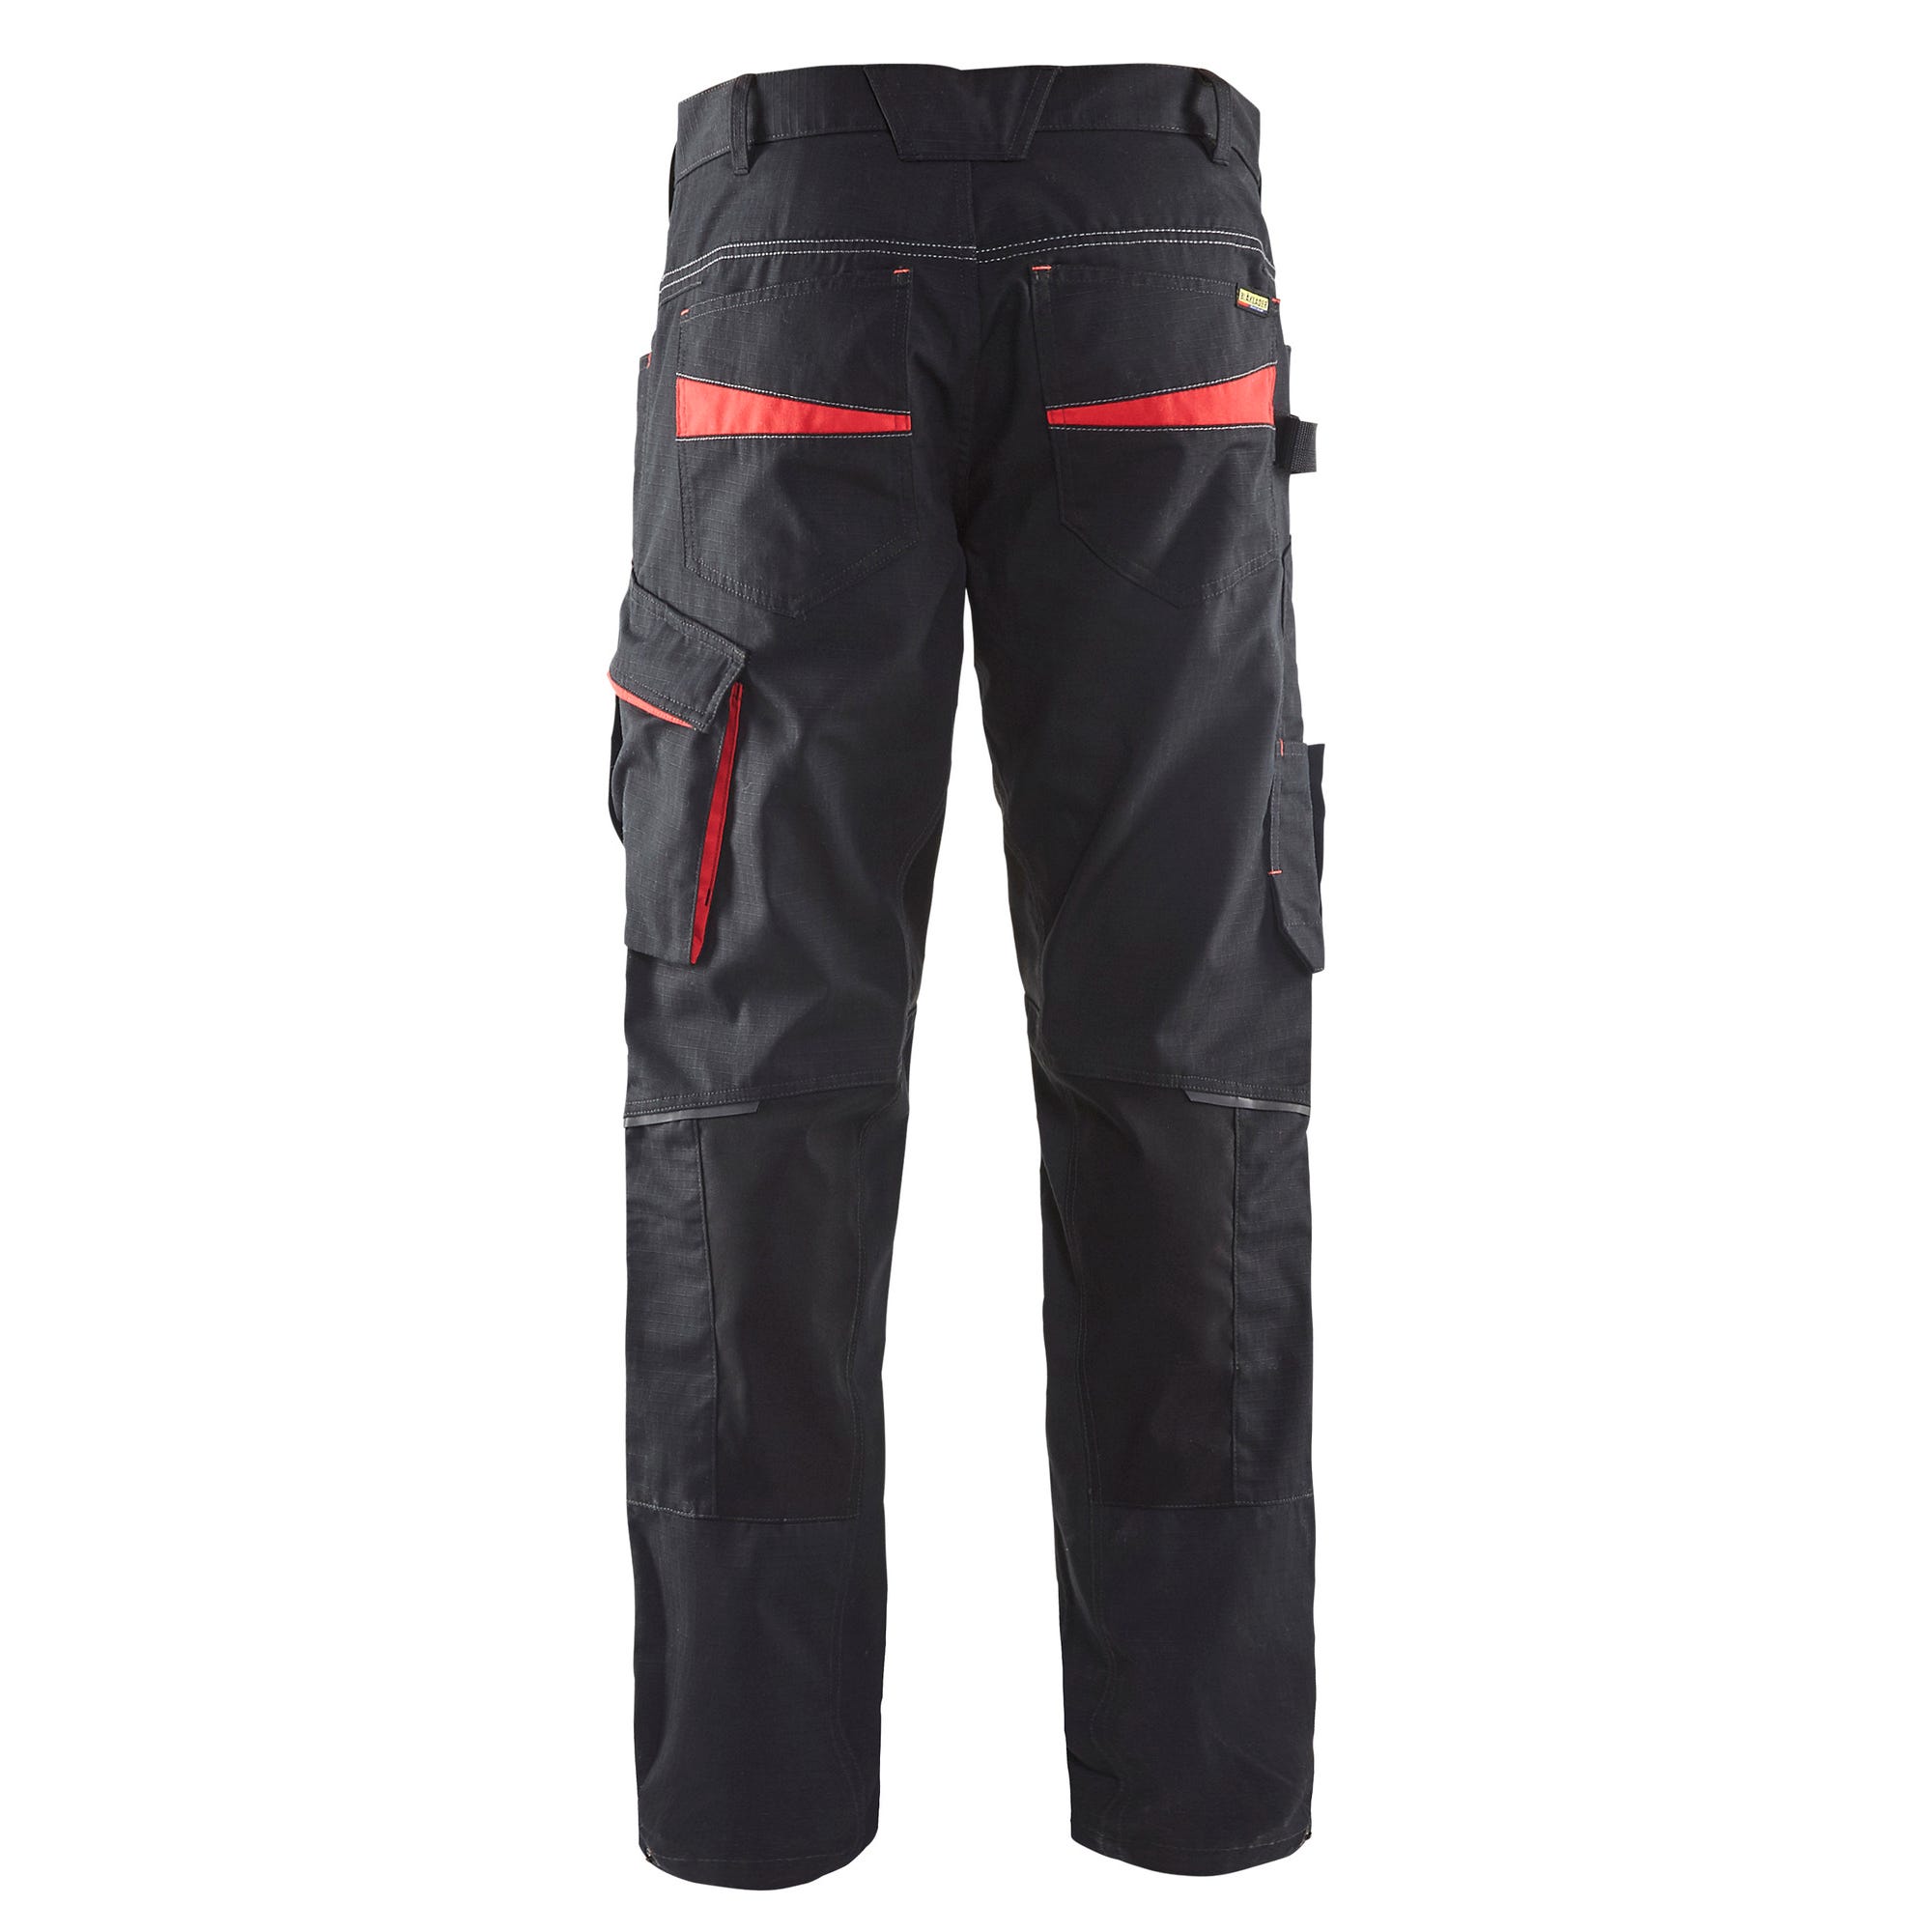 Pantalon de travail stretch Noir/Rouge T.40 1495 - BLAKLADER 1